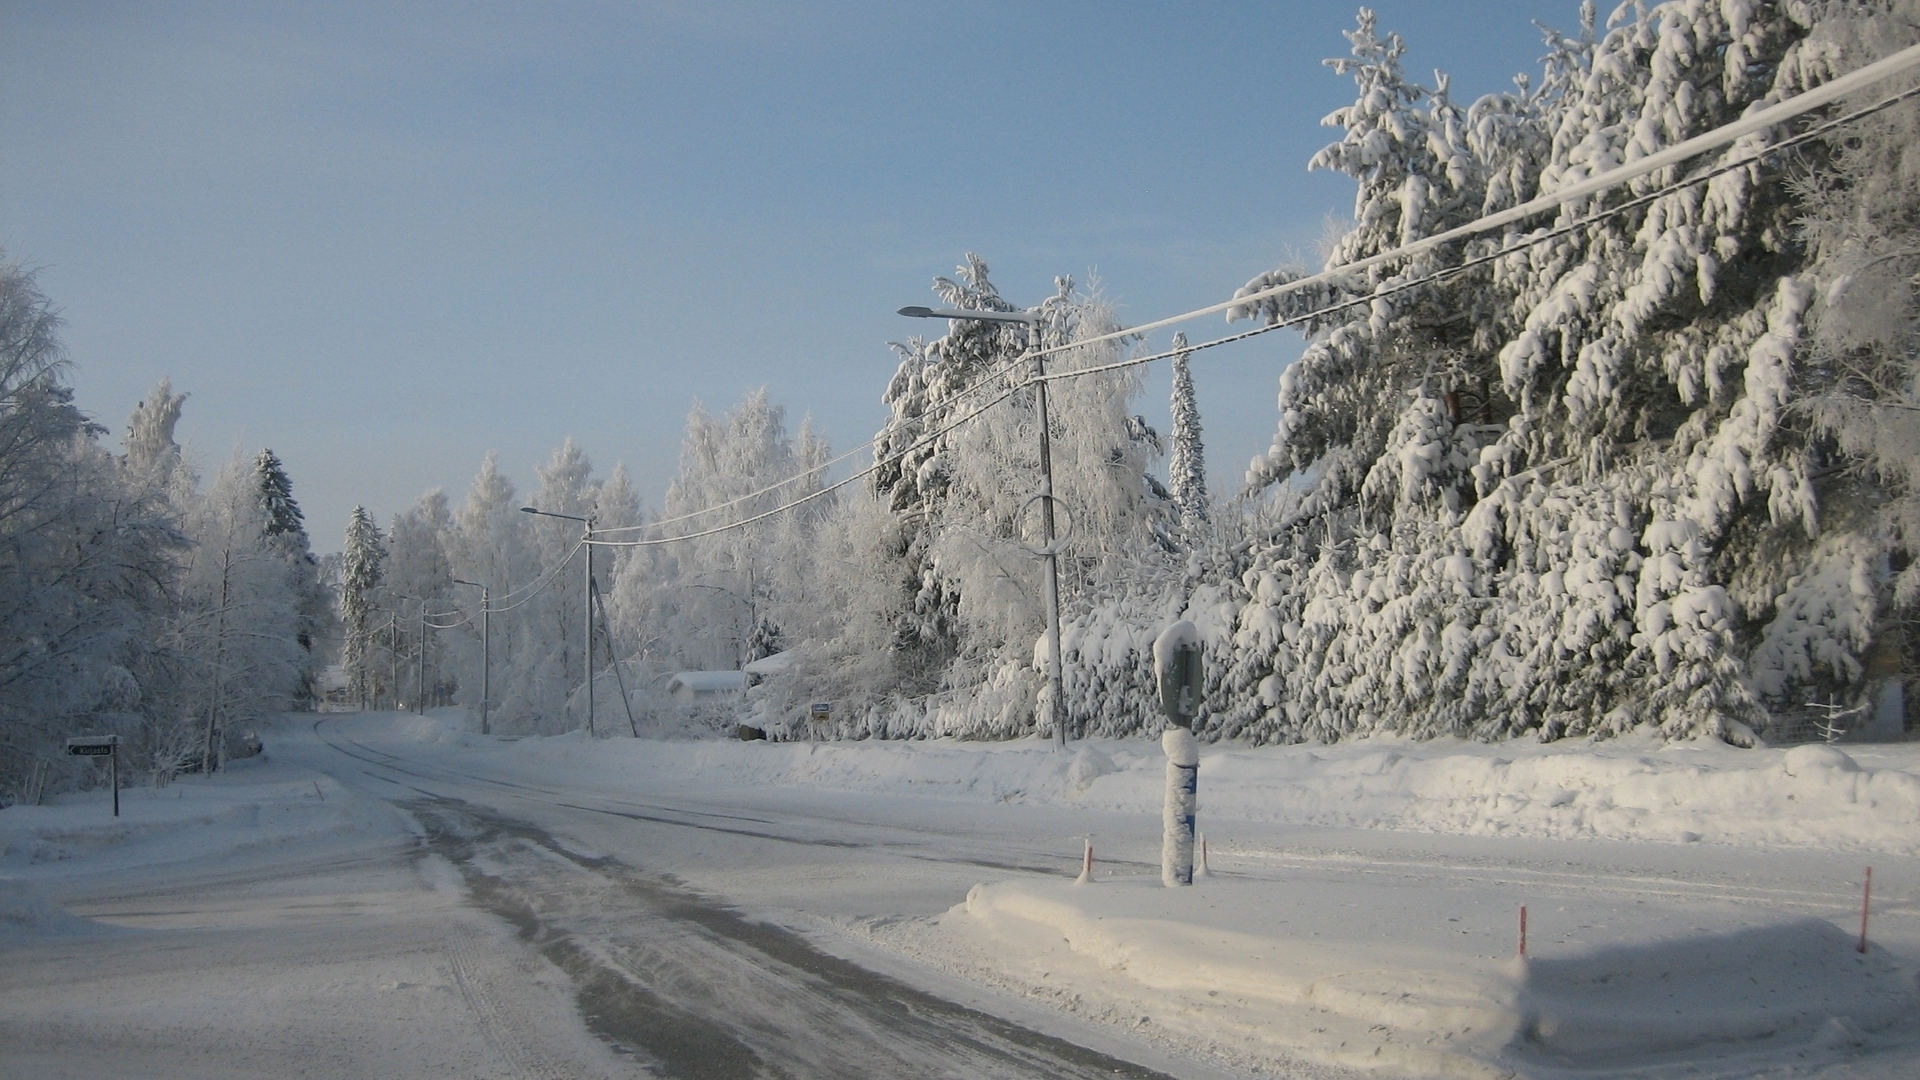 Скачать картинку Зима, Снег, Дорога, Дерево, Фотографии в телефон бесплатно.